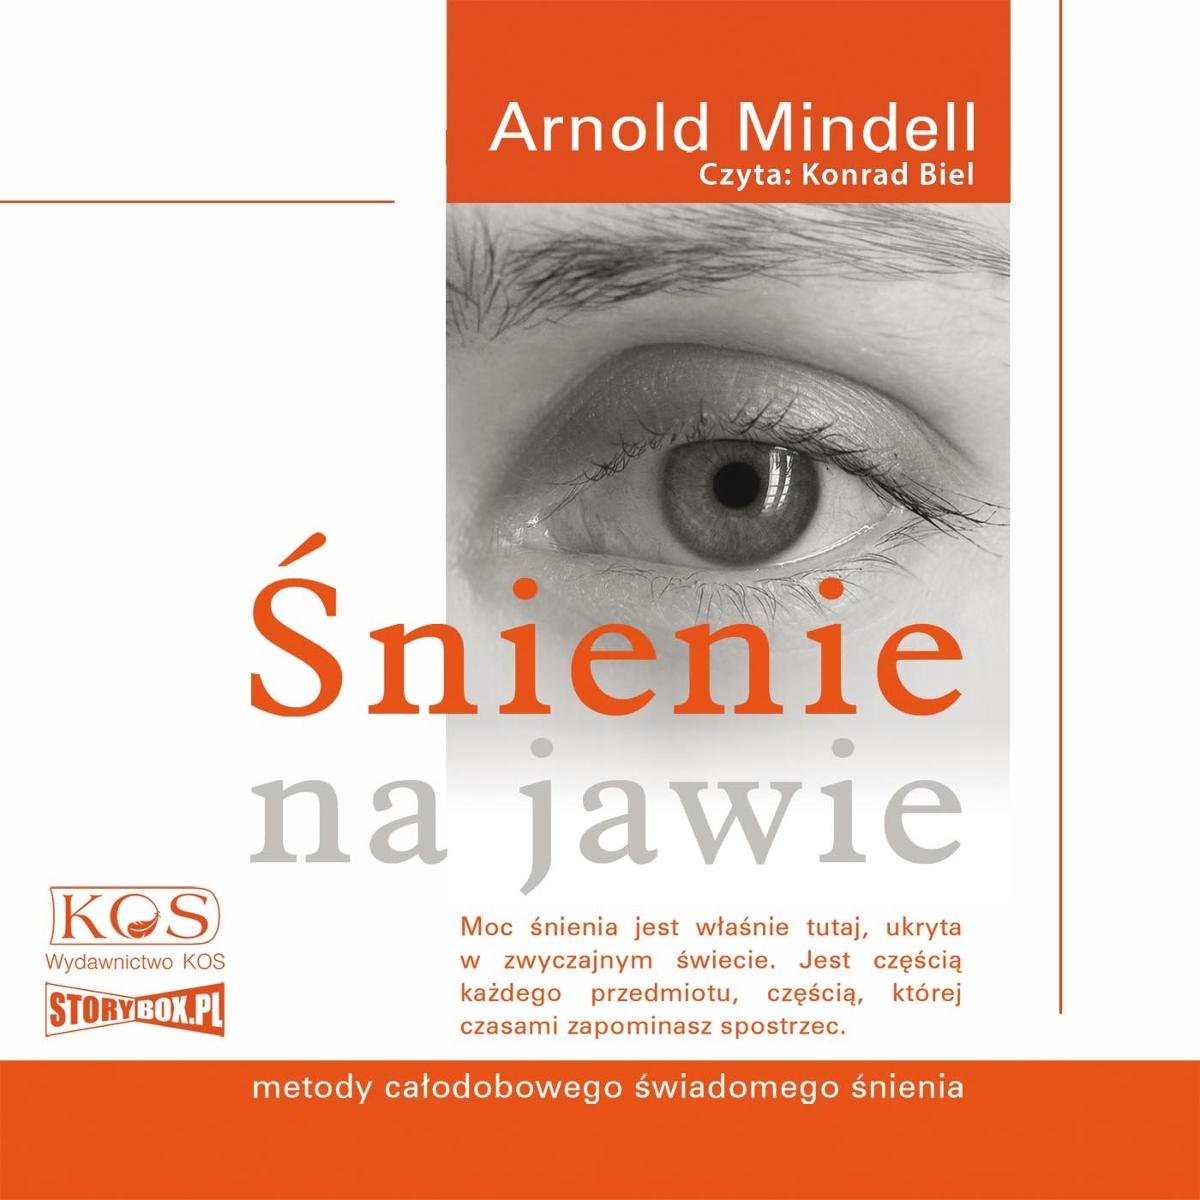 Śnienie Na Jawie Metody Całodobowego świadomego śnienia Mindell Arnold Audiobook Sklep 1034